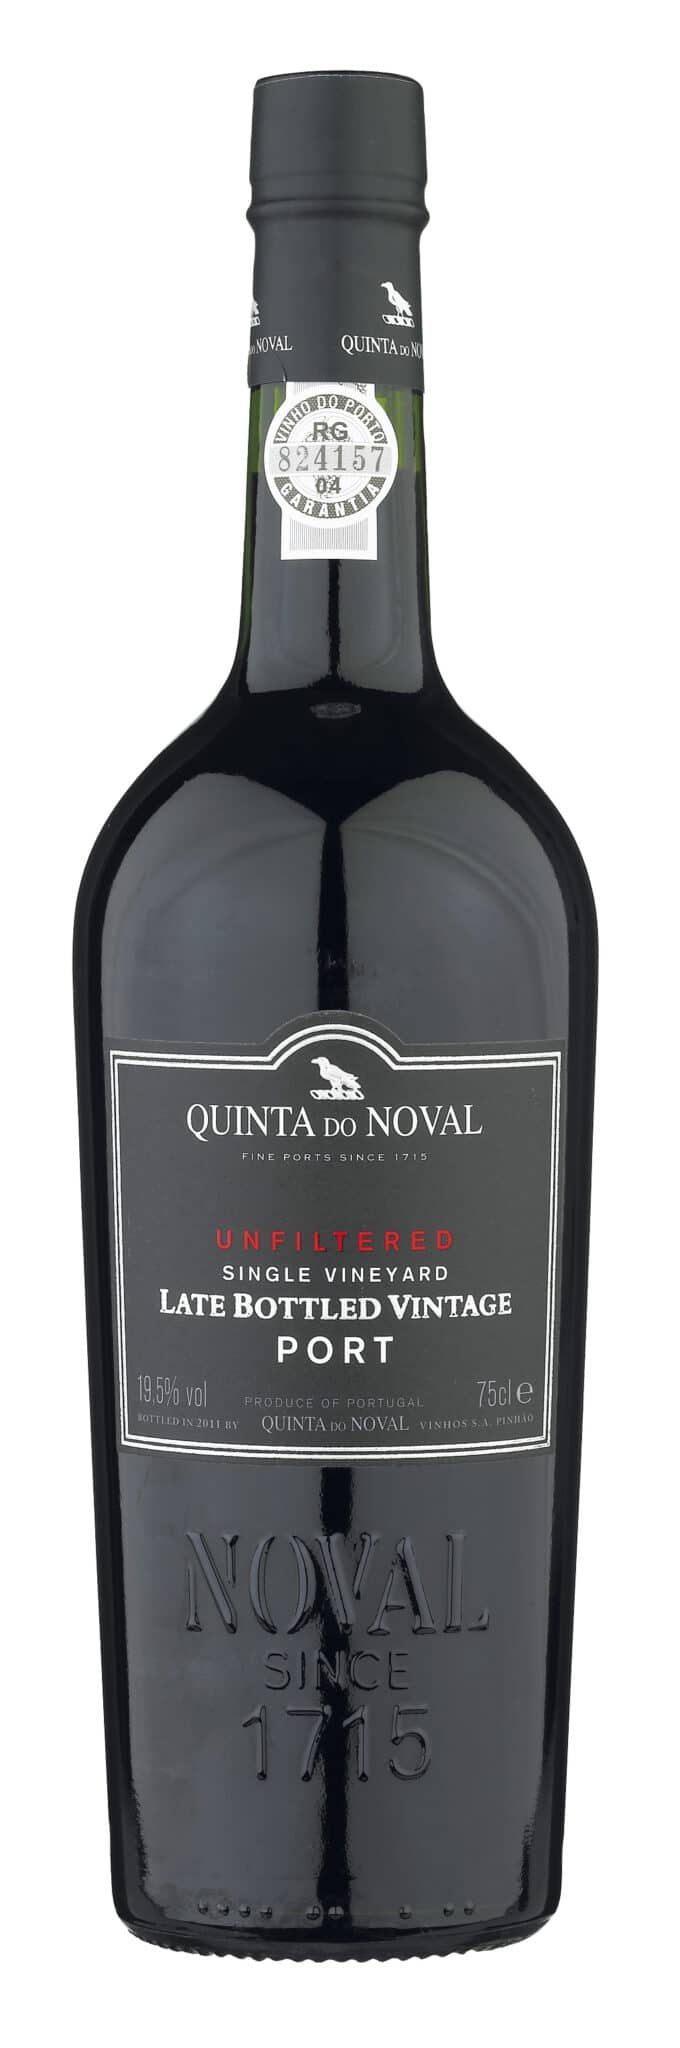 Quinta do Noval, Late Bottled Vintage Port Unfiltered, Single Vineyard 2016